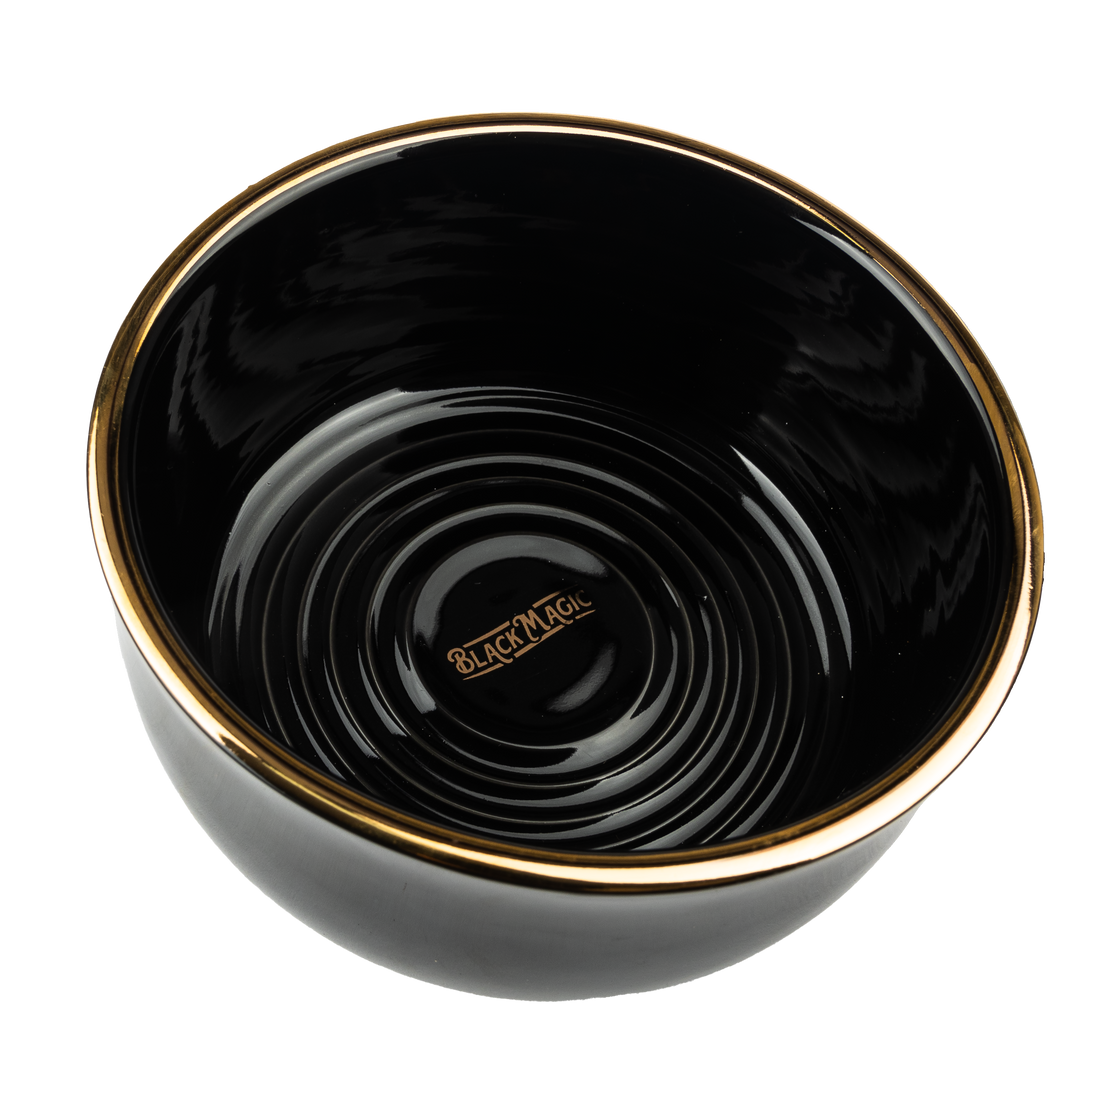 Black Magic Organic Shaving Bowl (24k gilded gold)